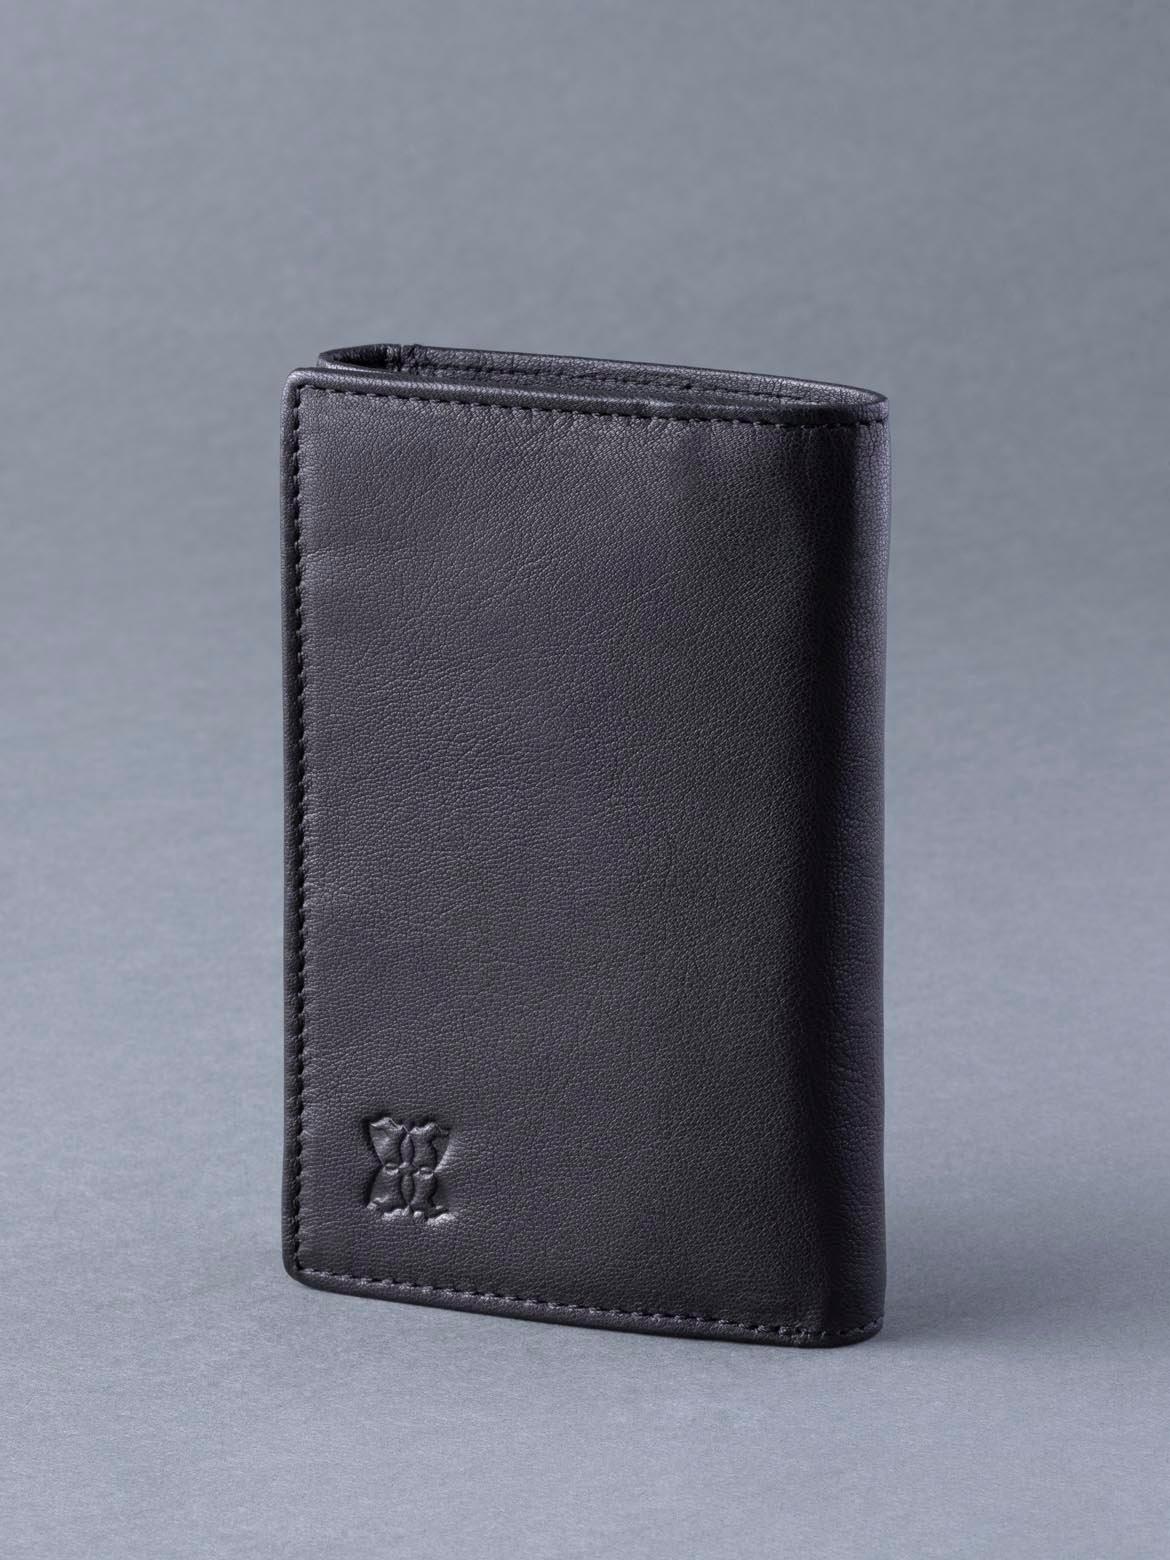 Кожаный кошелек в три сложения 'Bowston' Lakeland Leather, черный